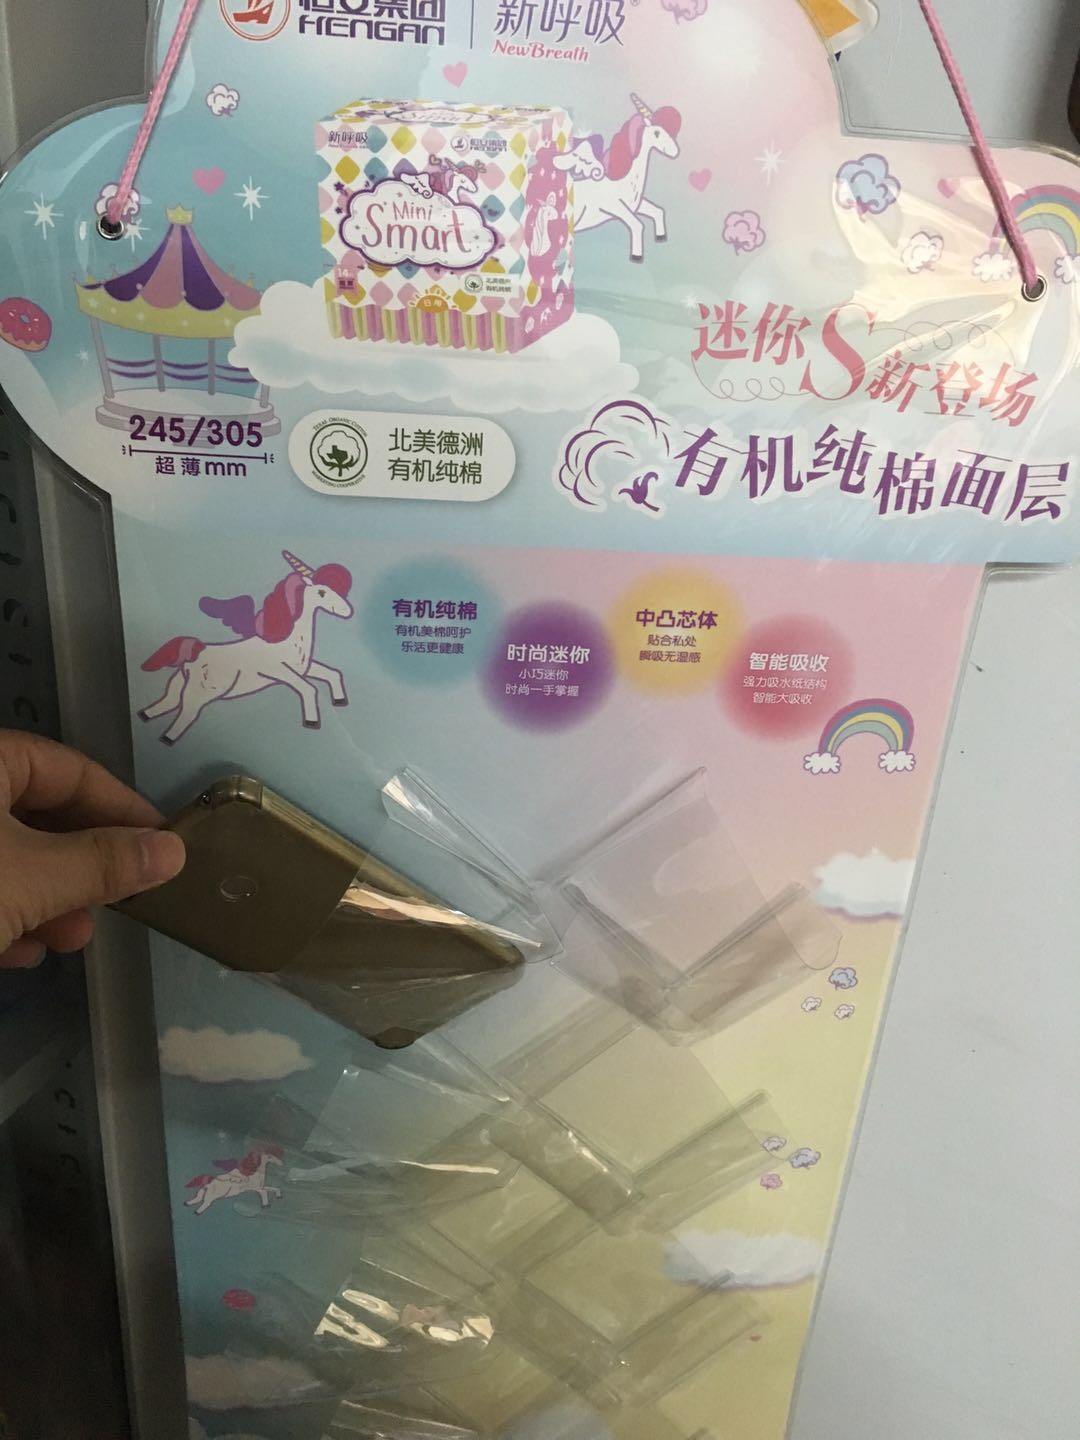 苍南县锦绣塑料制品有限公司将亮相CIPPME上海国际包装展